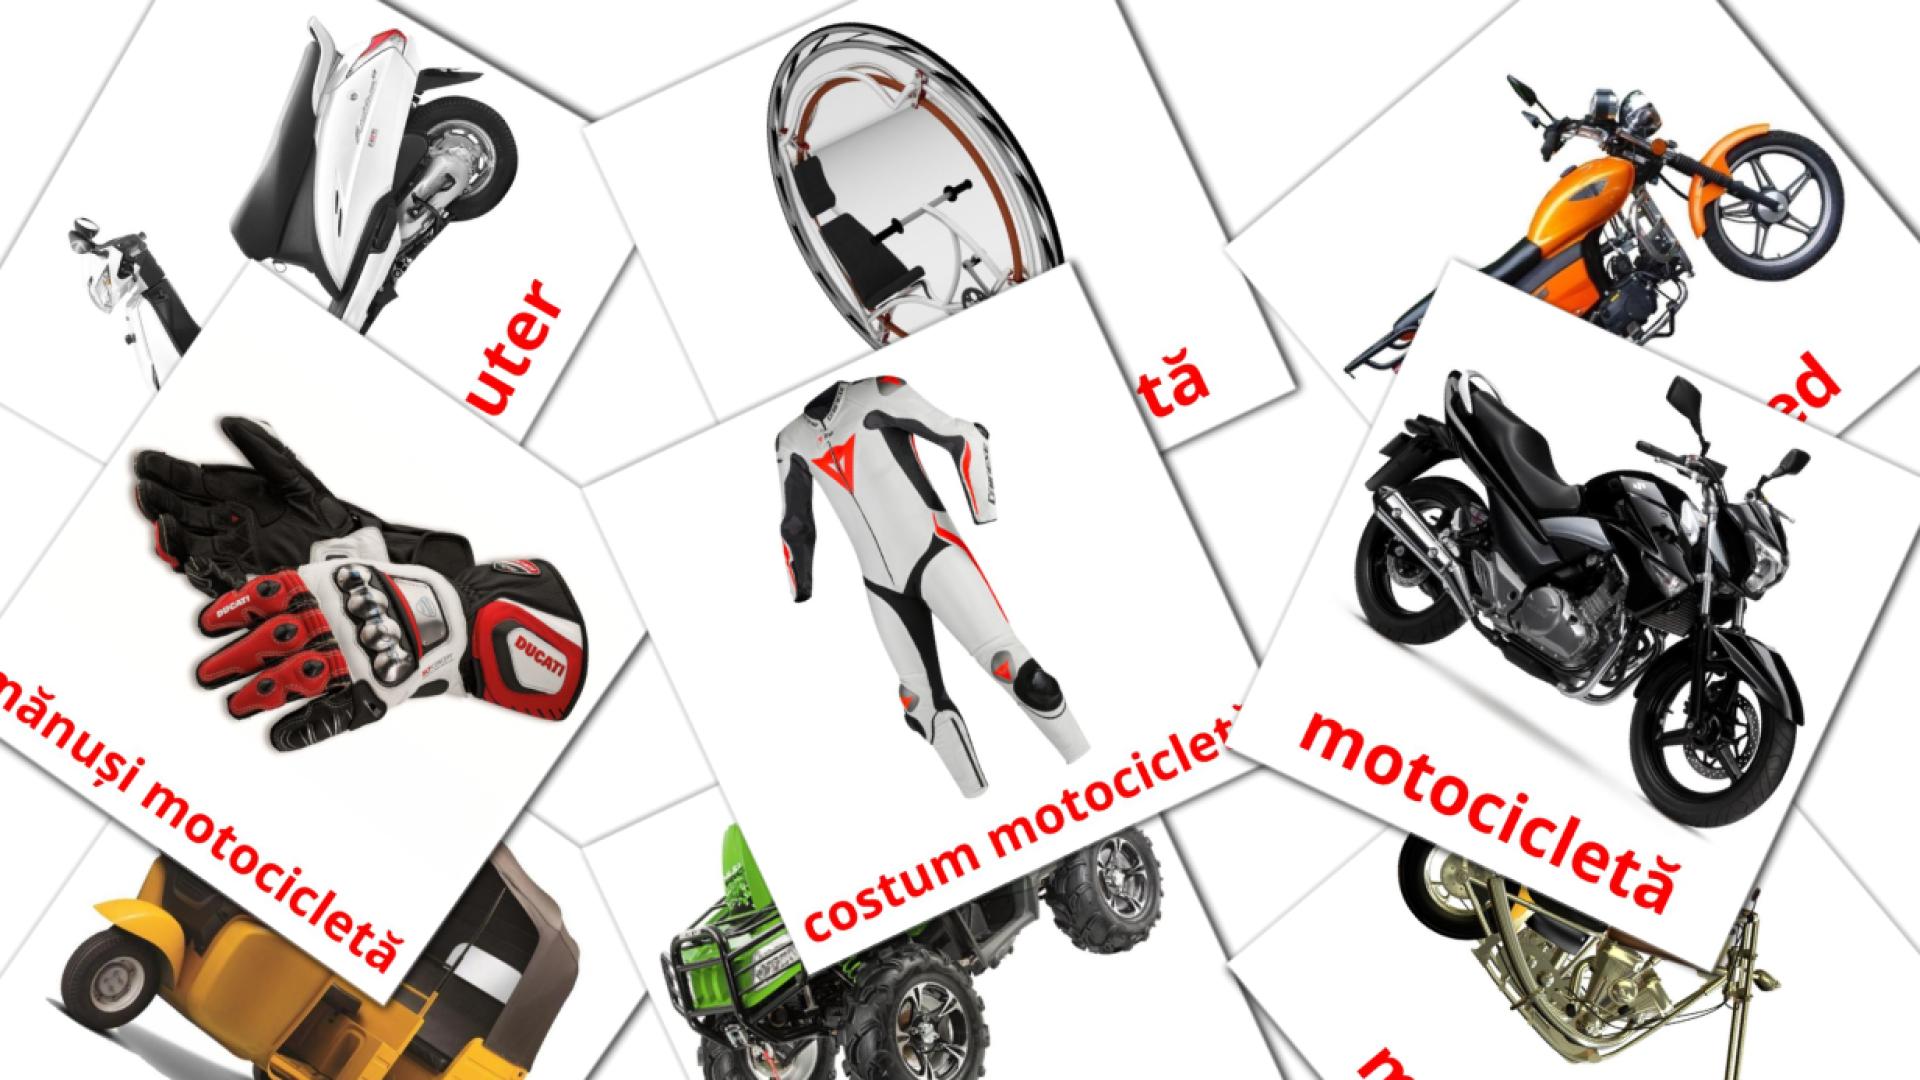 14 Bildkarten für Motociclete